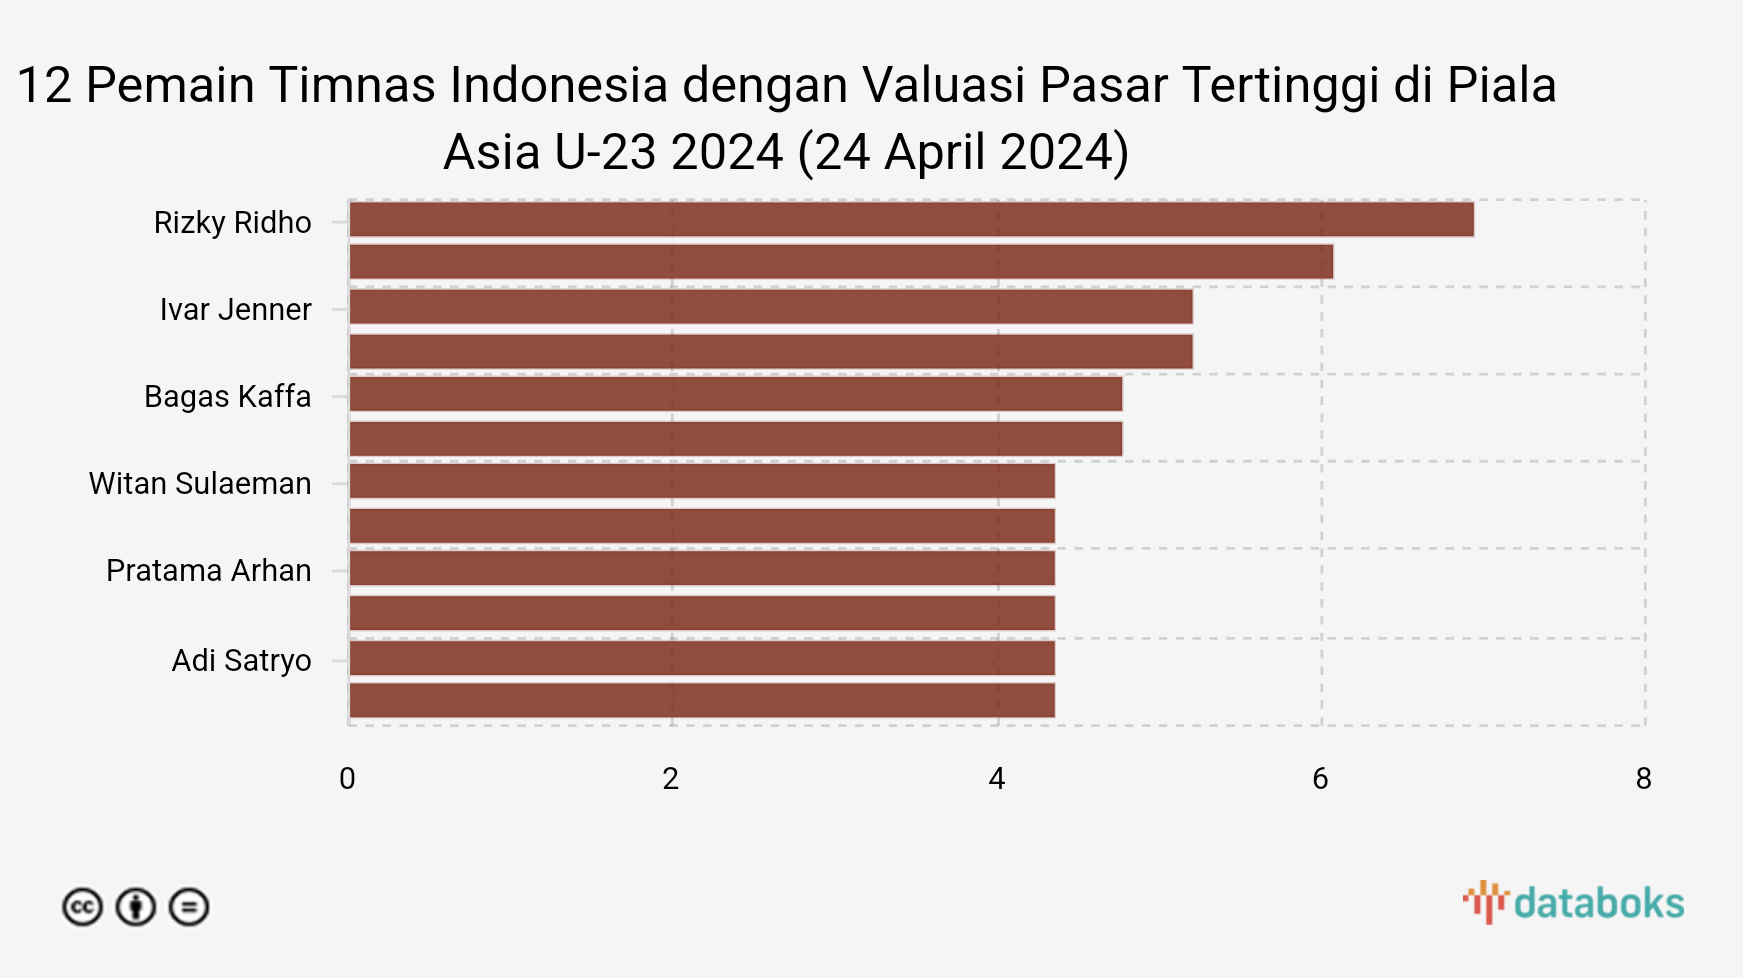 10 Pemain Timnas Indonesia dengan Valuasi Pasar Tertinggi di Piala Asia U-23 2024 (24 April 2024)